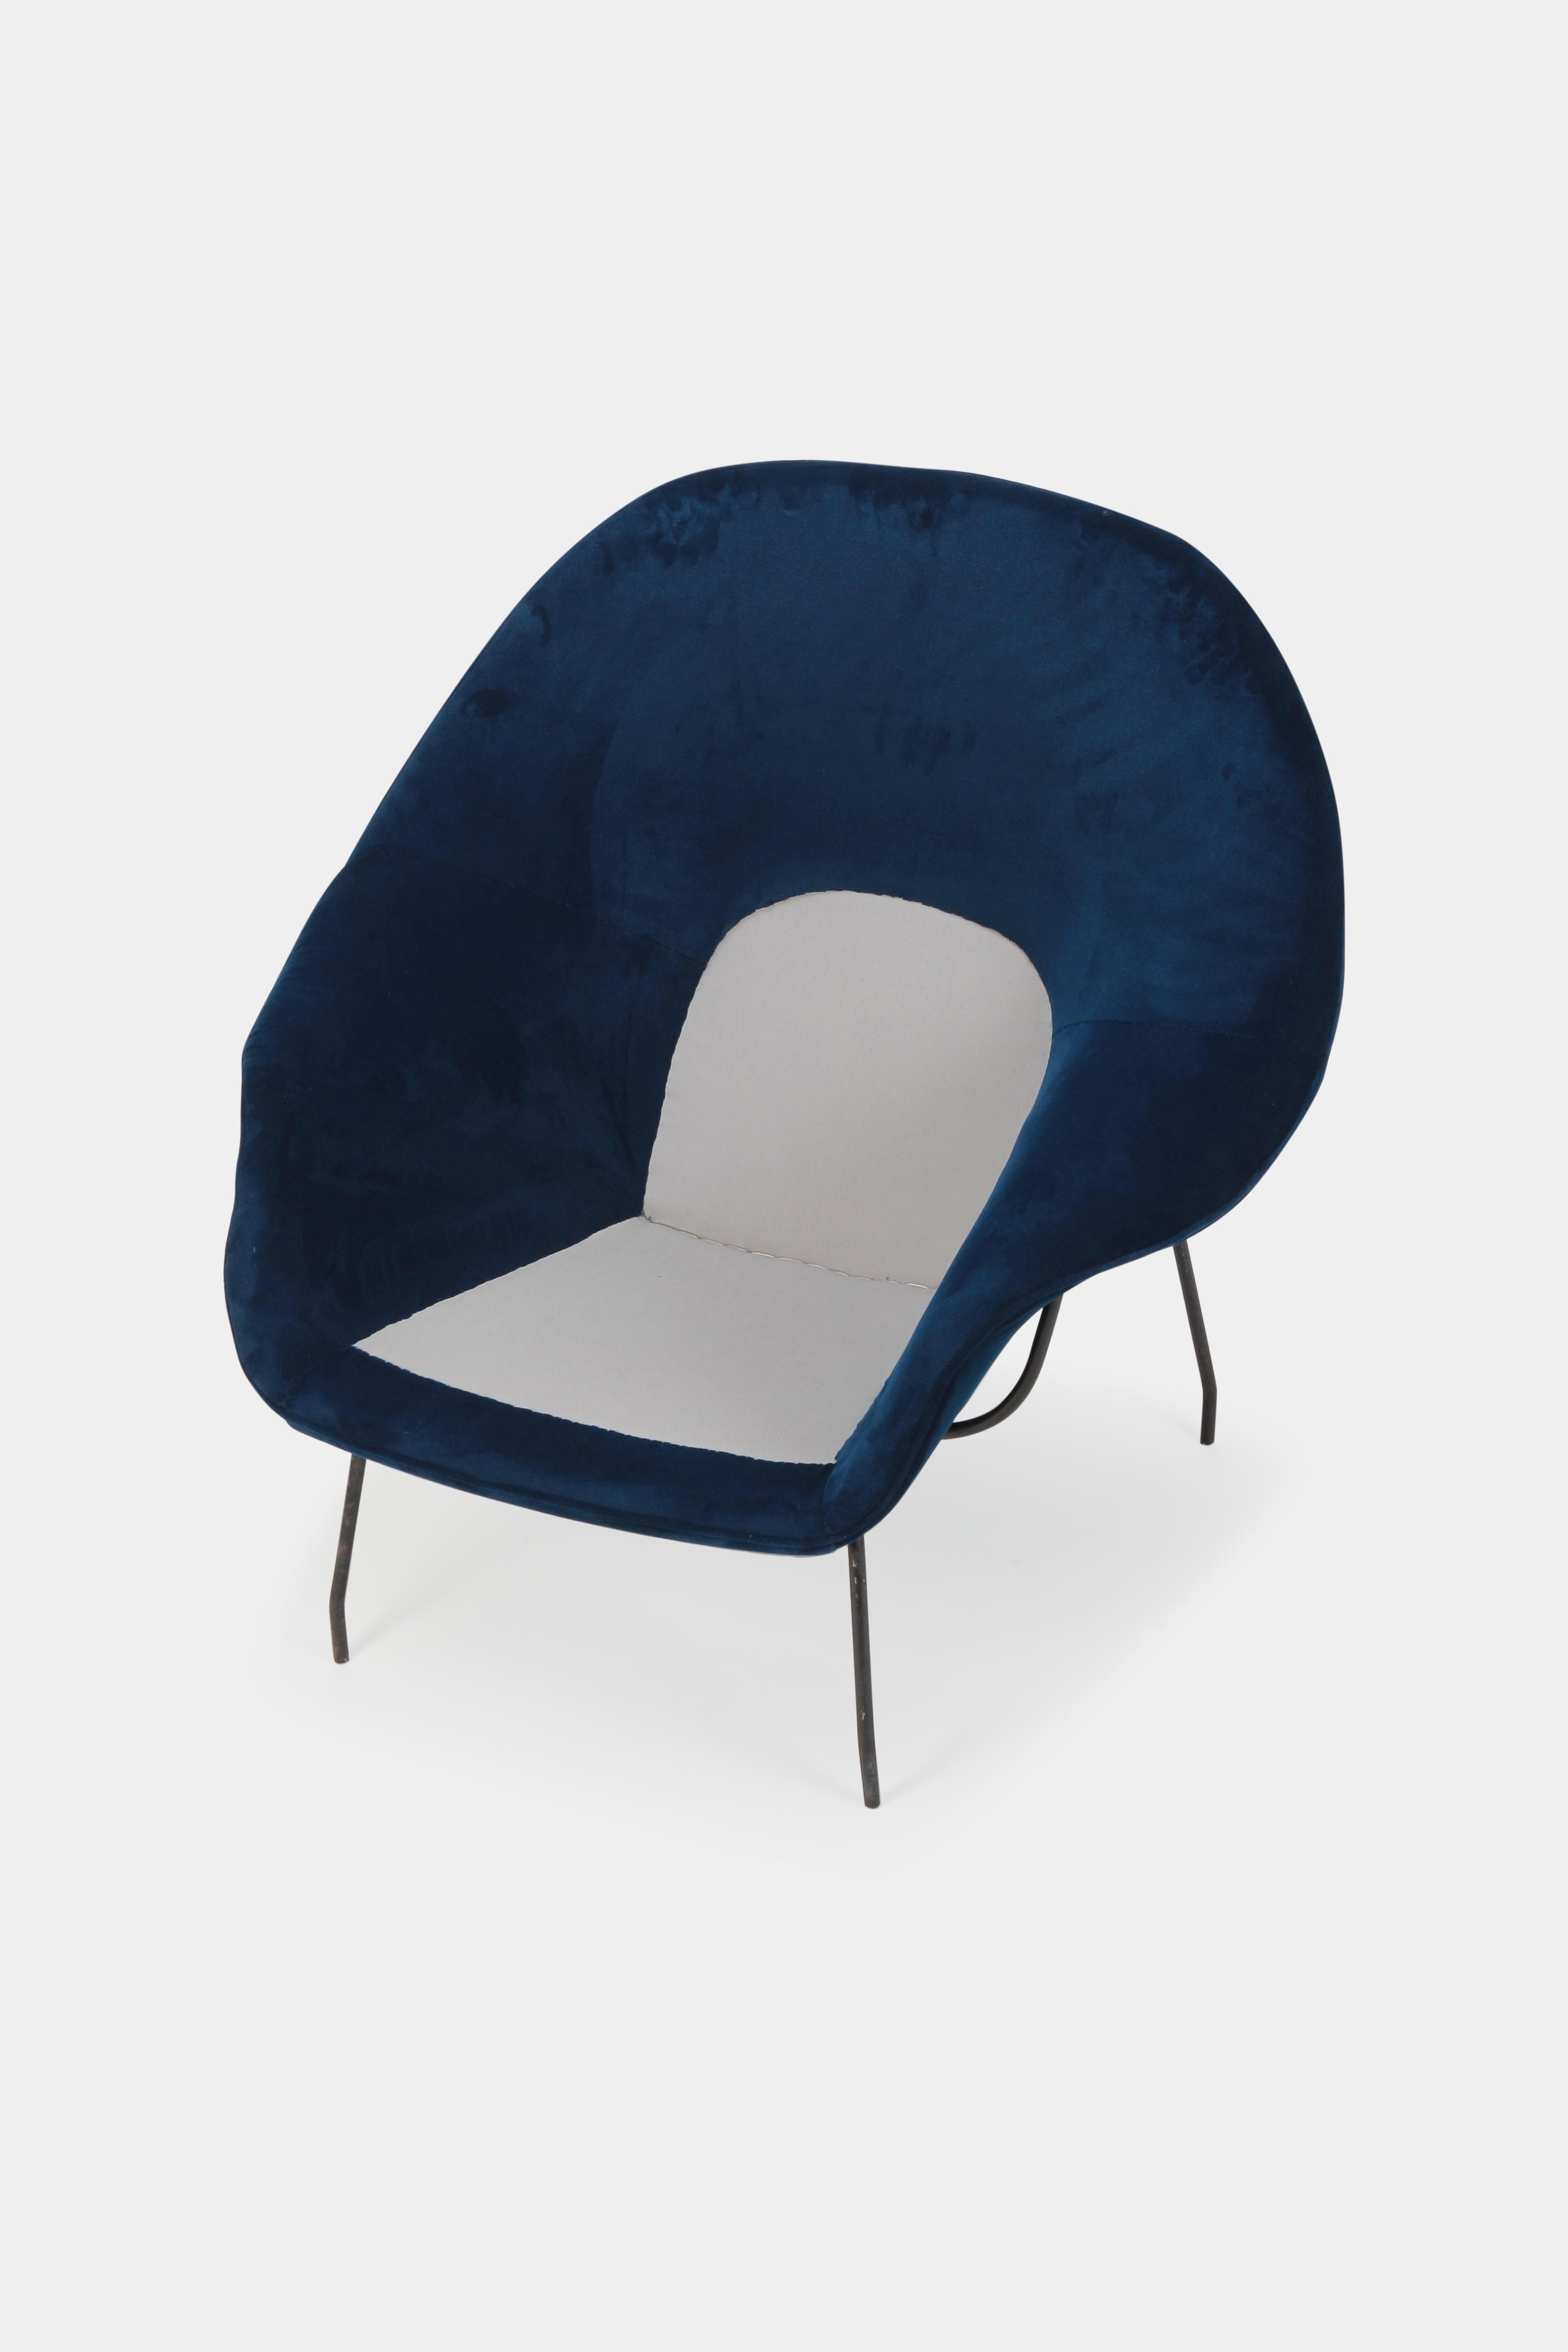 Eero Saarinen Womb Chair Knoll Int. 1950s 2